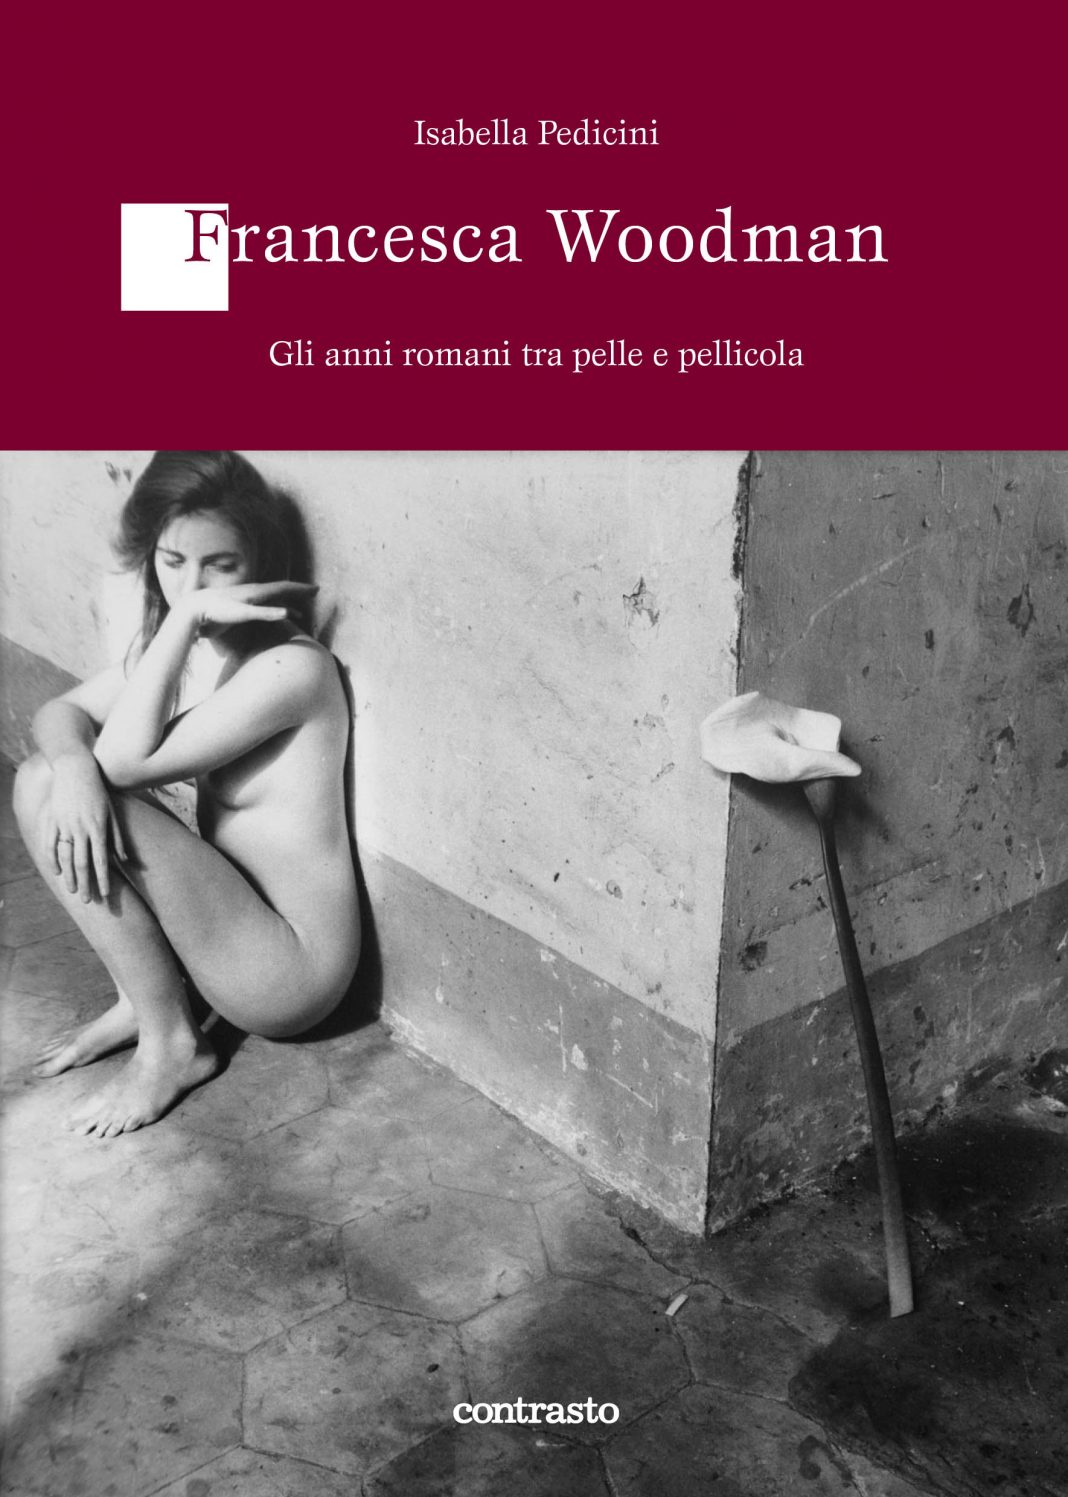 Francesca Woodman – Gli anni romani tra pelle e pellicolahttps://www.exibart.com/repository/media/eventi/2012/10/francesca-woodman-8211-gli-anni-romani-tra-pelle-e-pellicola-1068x1497.jpg